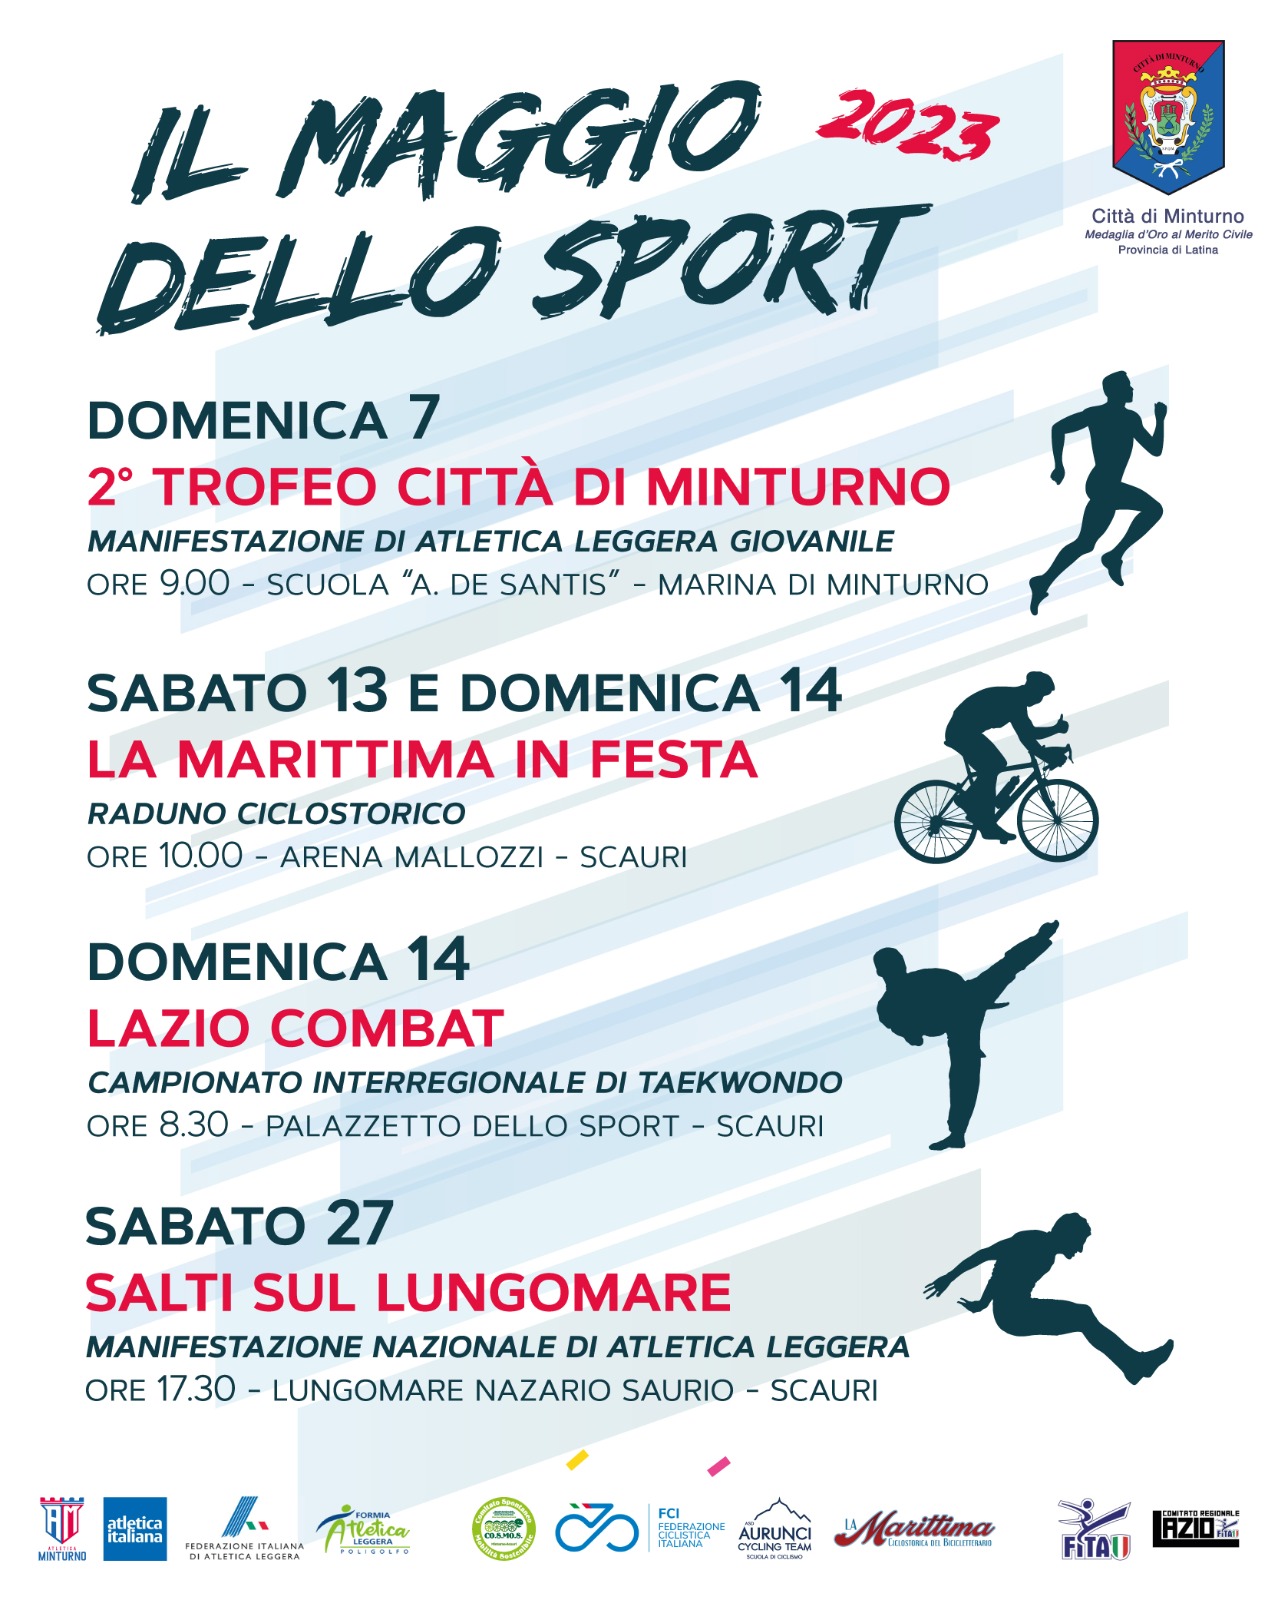 COMUNICATO STAMPA
29.04.2023
	
Minturno-Scauri
Atletica, ciclismo e taekwondo con “Il Maggio dello Sport”